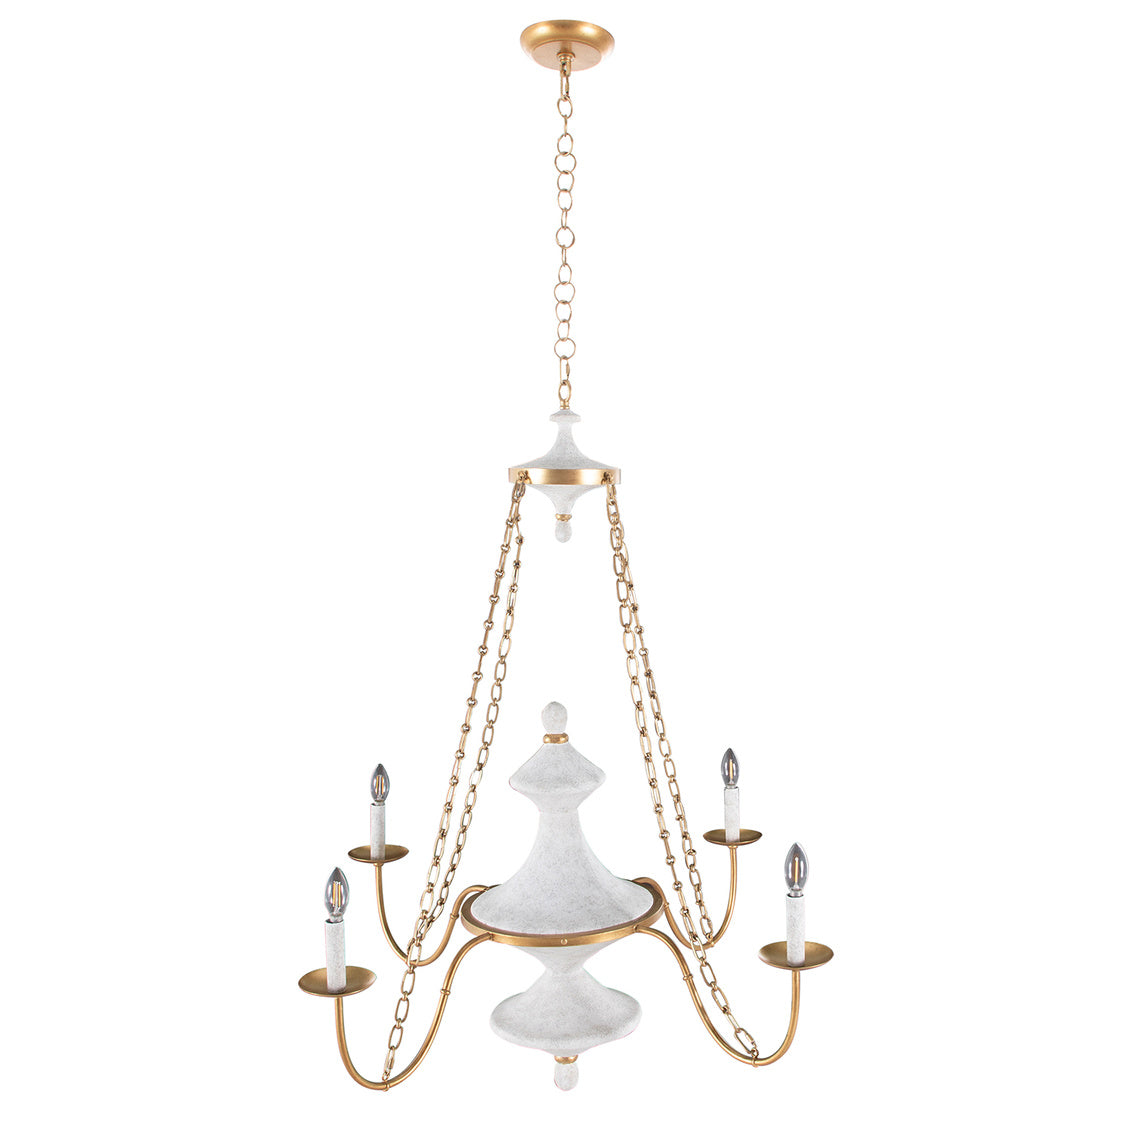 SCH-175390 chandelier